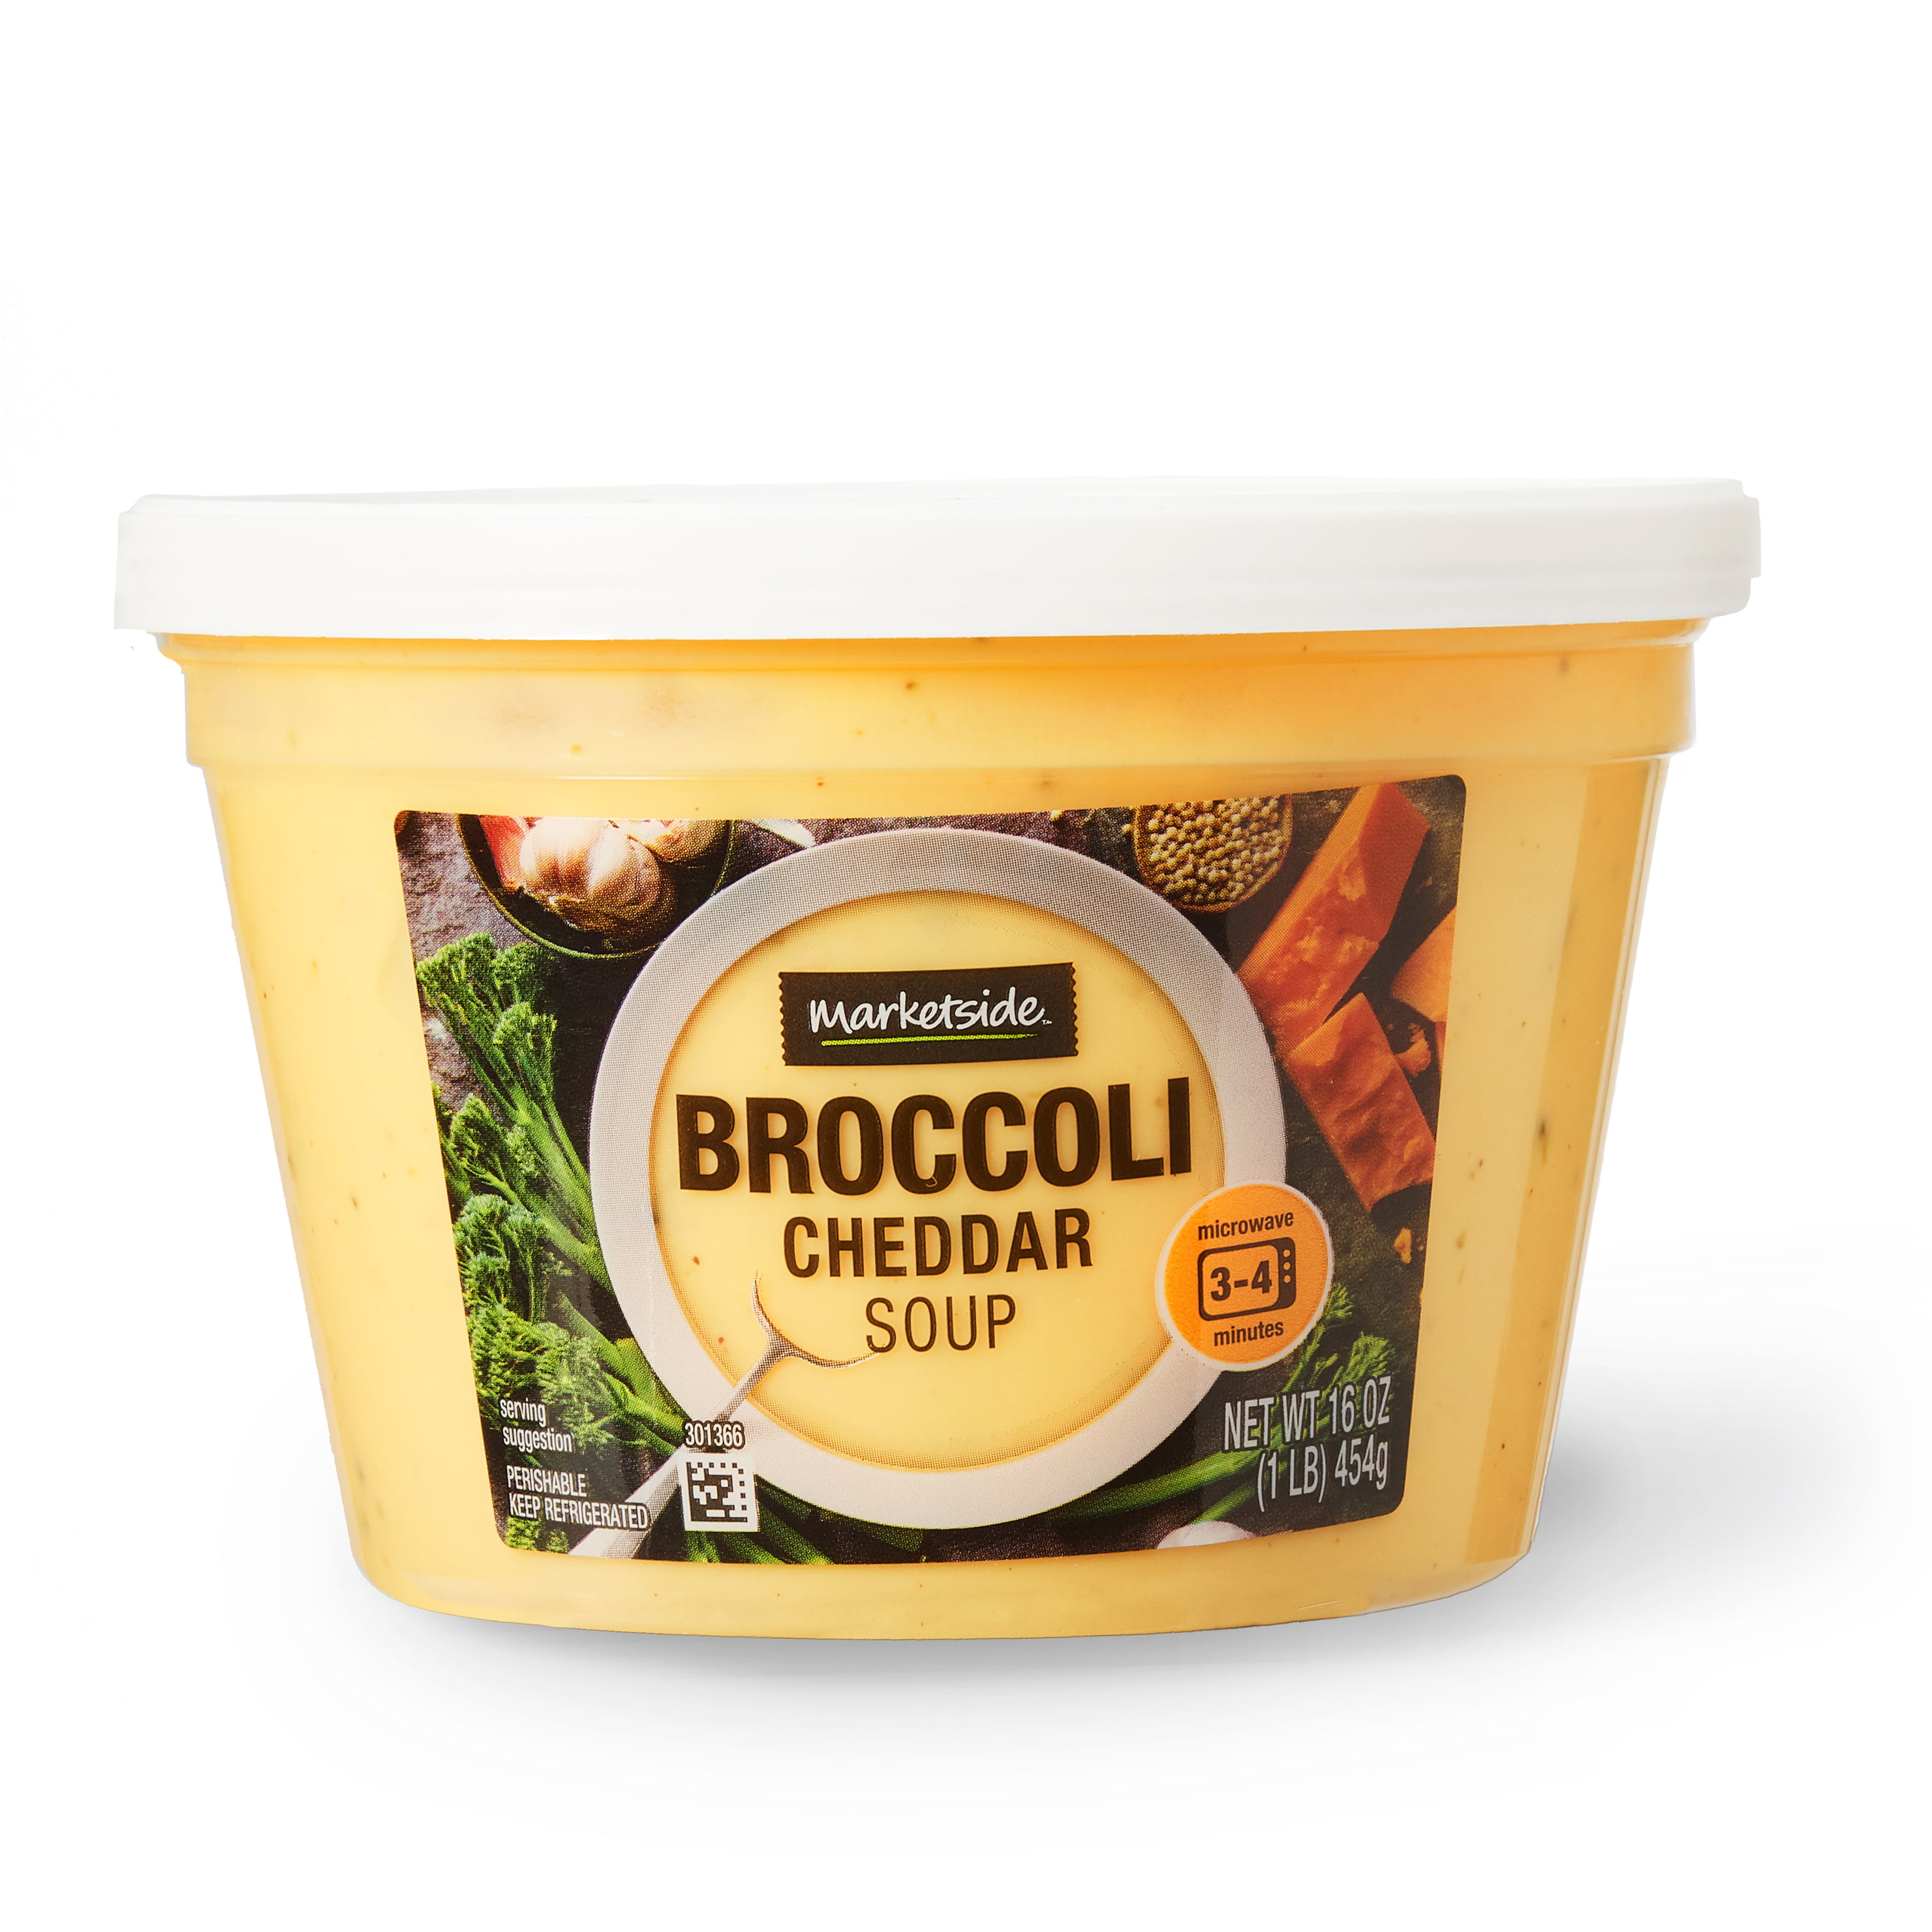 Marketside Broccoli Cheddar Soup, 16 oz